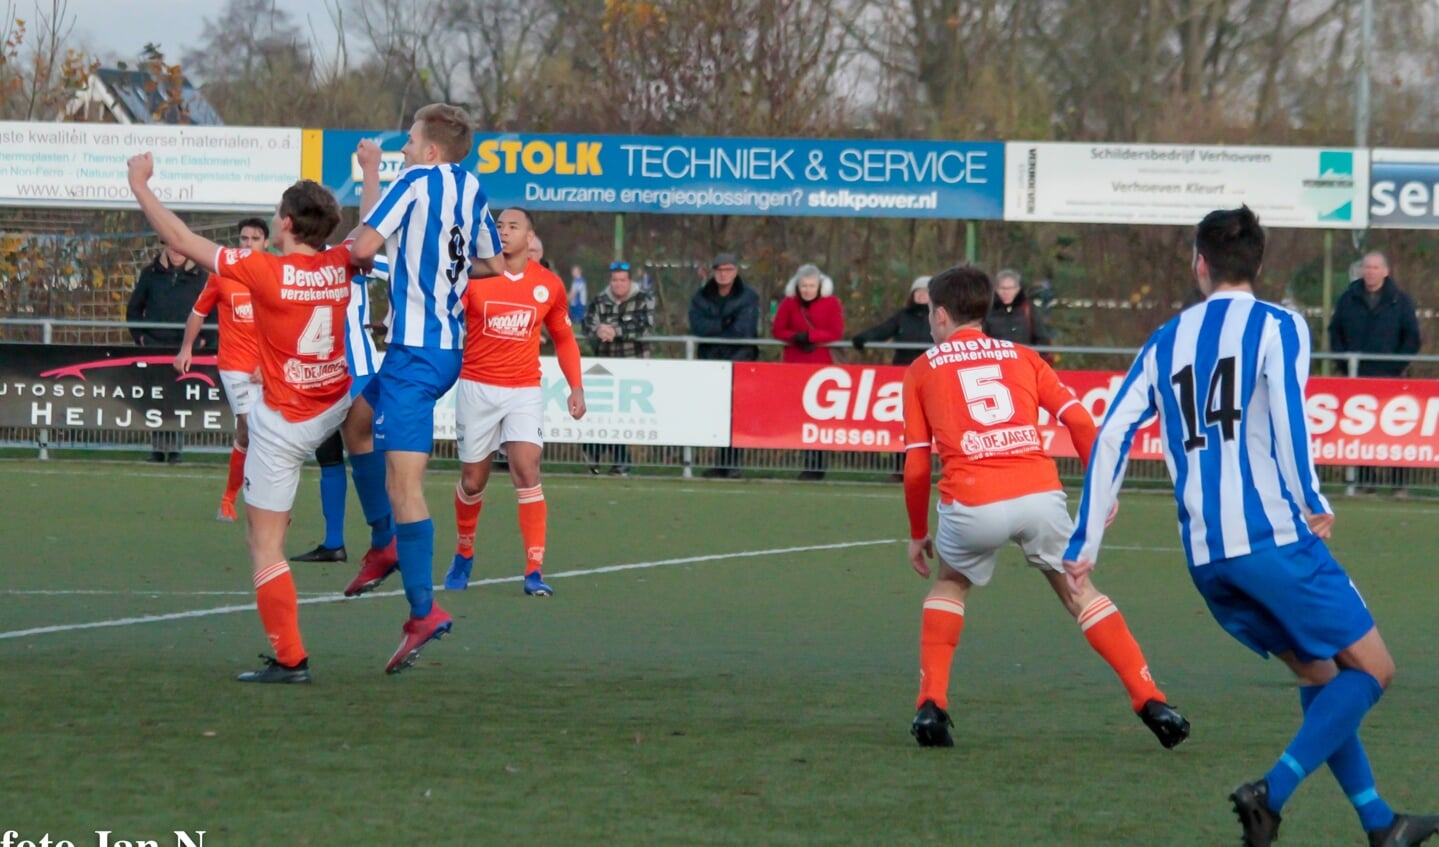 • Almkerk - Oranje Wit (0-0).